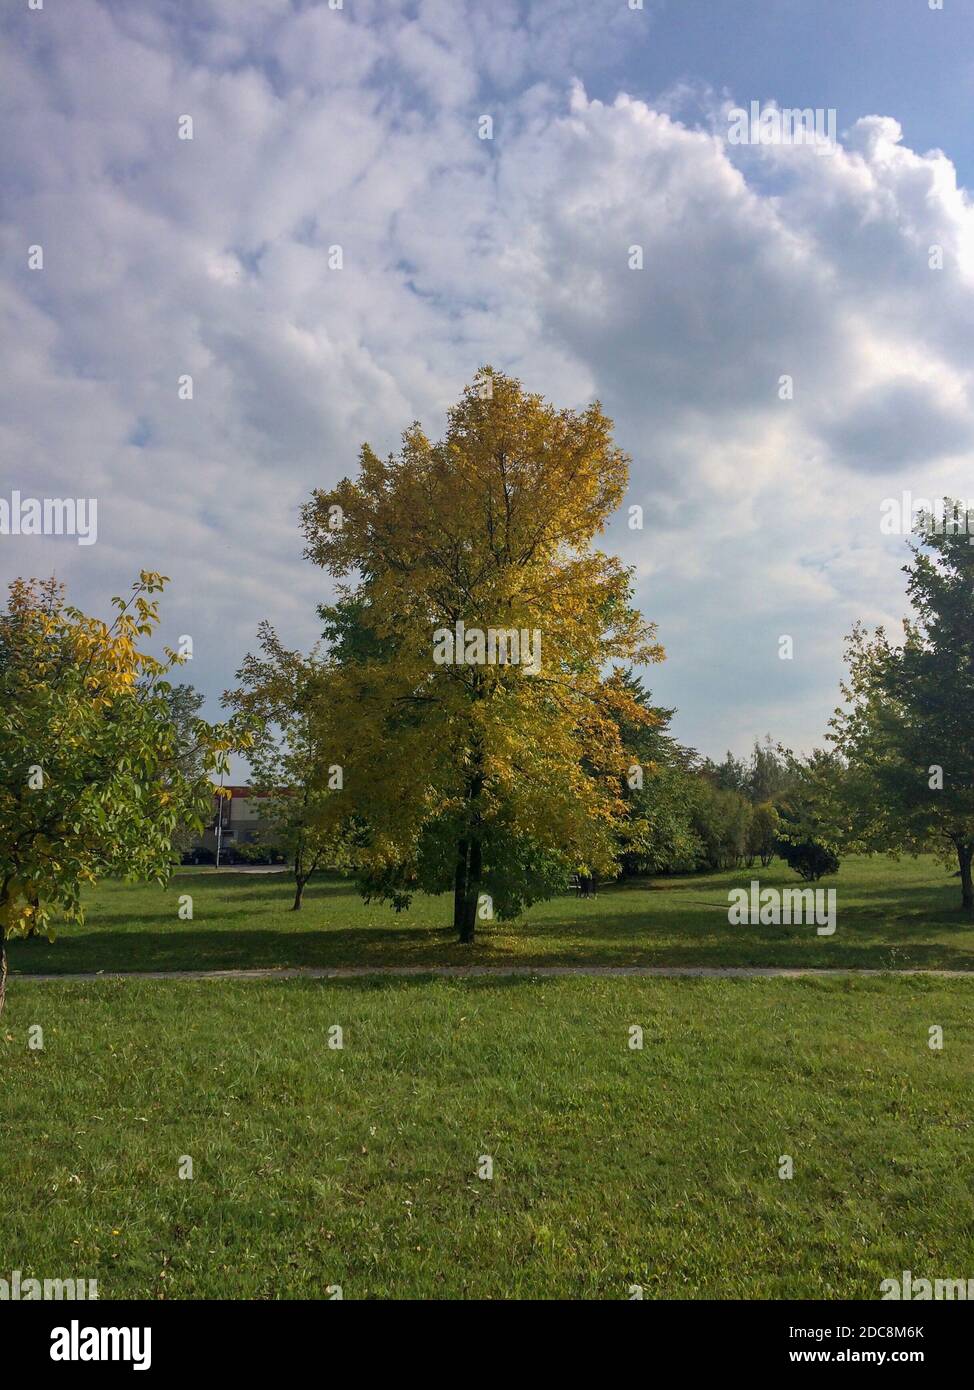 arbre solitaire, arbre solitaire dans un parc de la ville, paysage d'automne, feuilles jaunrées, début de l'automne Banque D'Images